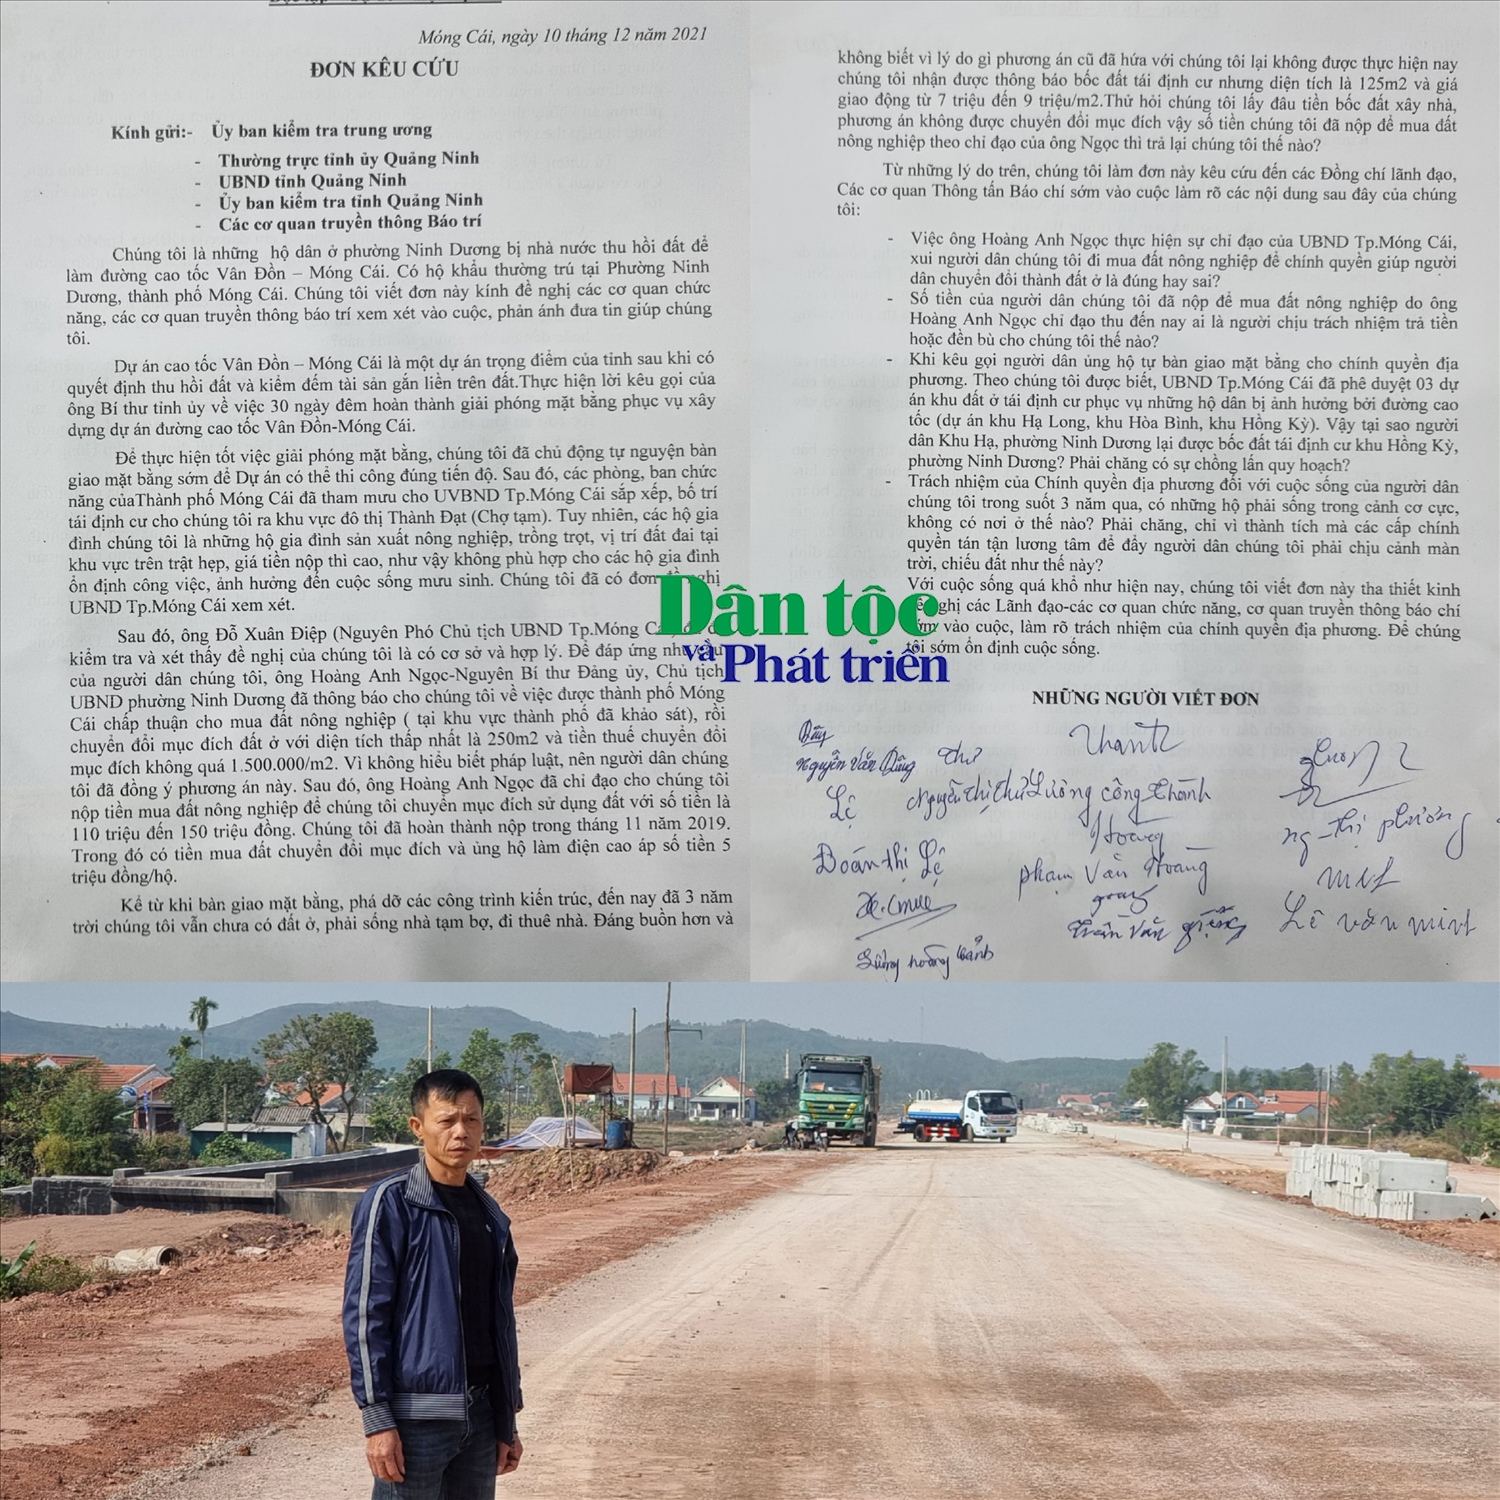 Ông Nguyễn Văn Dũng đứng trên tuyến đường cao tốc Vân Đồn - Móng Cái cùng lá đơn kêu cứu của các hộ dân phường Ninh Dương